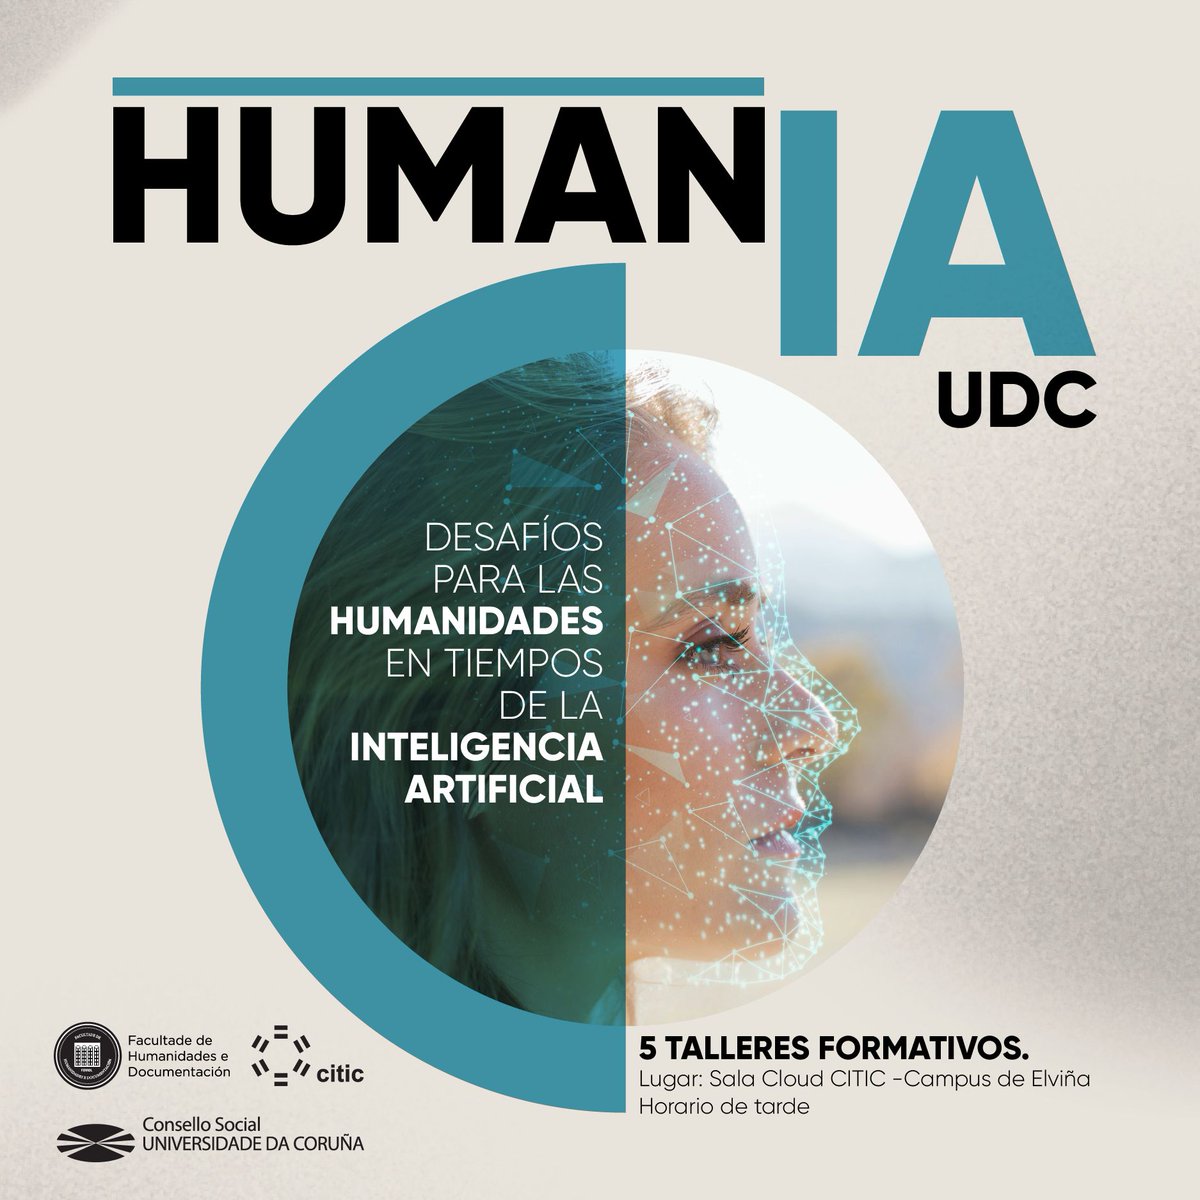 📢 ¡No te pierdas el ciclo de talleres formativos 'HumanIA UDC' organizado por el Consello Social y la Facultad de Humanidades e Documentación de la UDC en colaboración con el CITIC! Inscríbete ya en humaniaudc.com y únete a esta emocionante experiencia! #HumanIAUDC